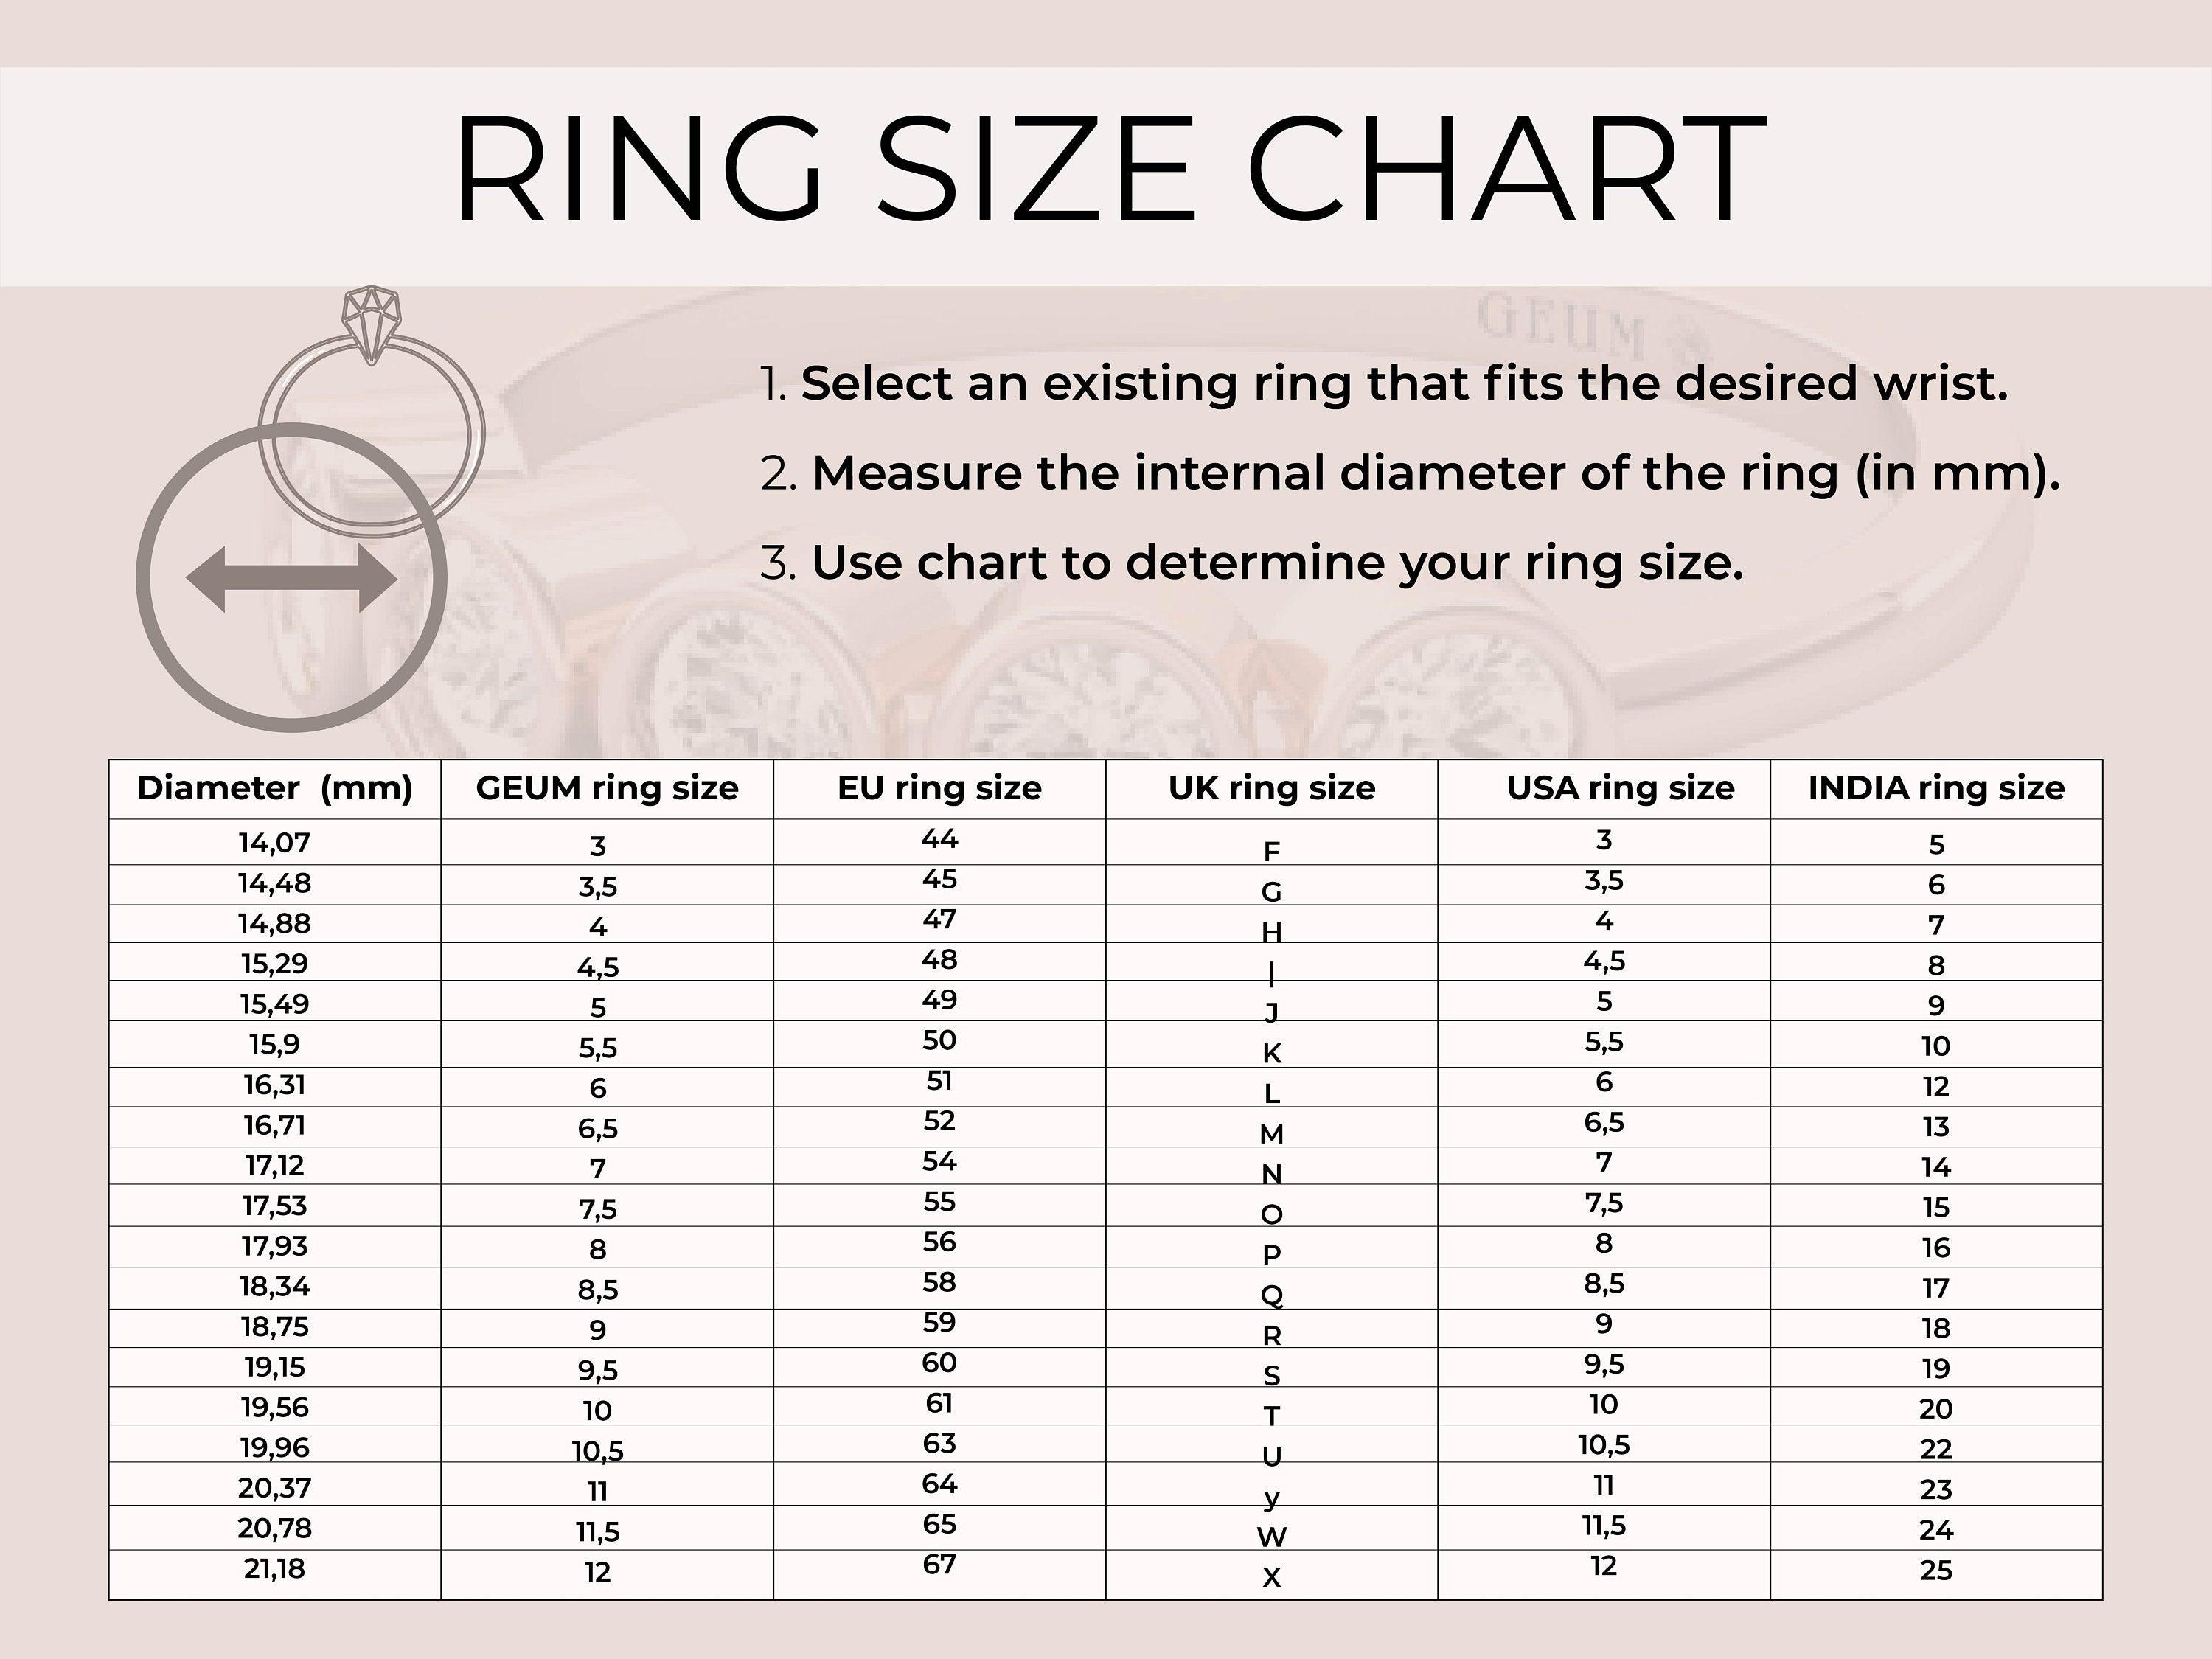 Handmade Rose Gold Ring, Yellow/White Gold Proposal Ring, Natural Diamond Designer Ring - GeumJewels